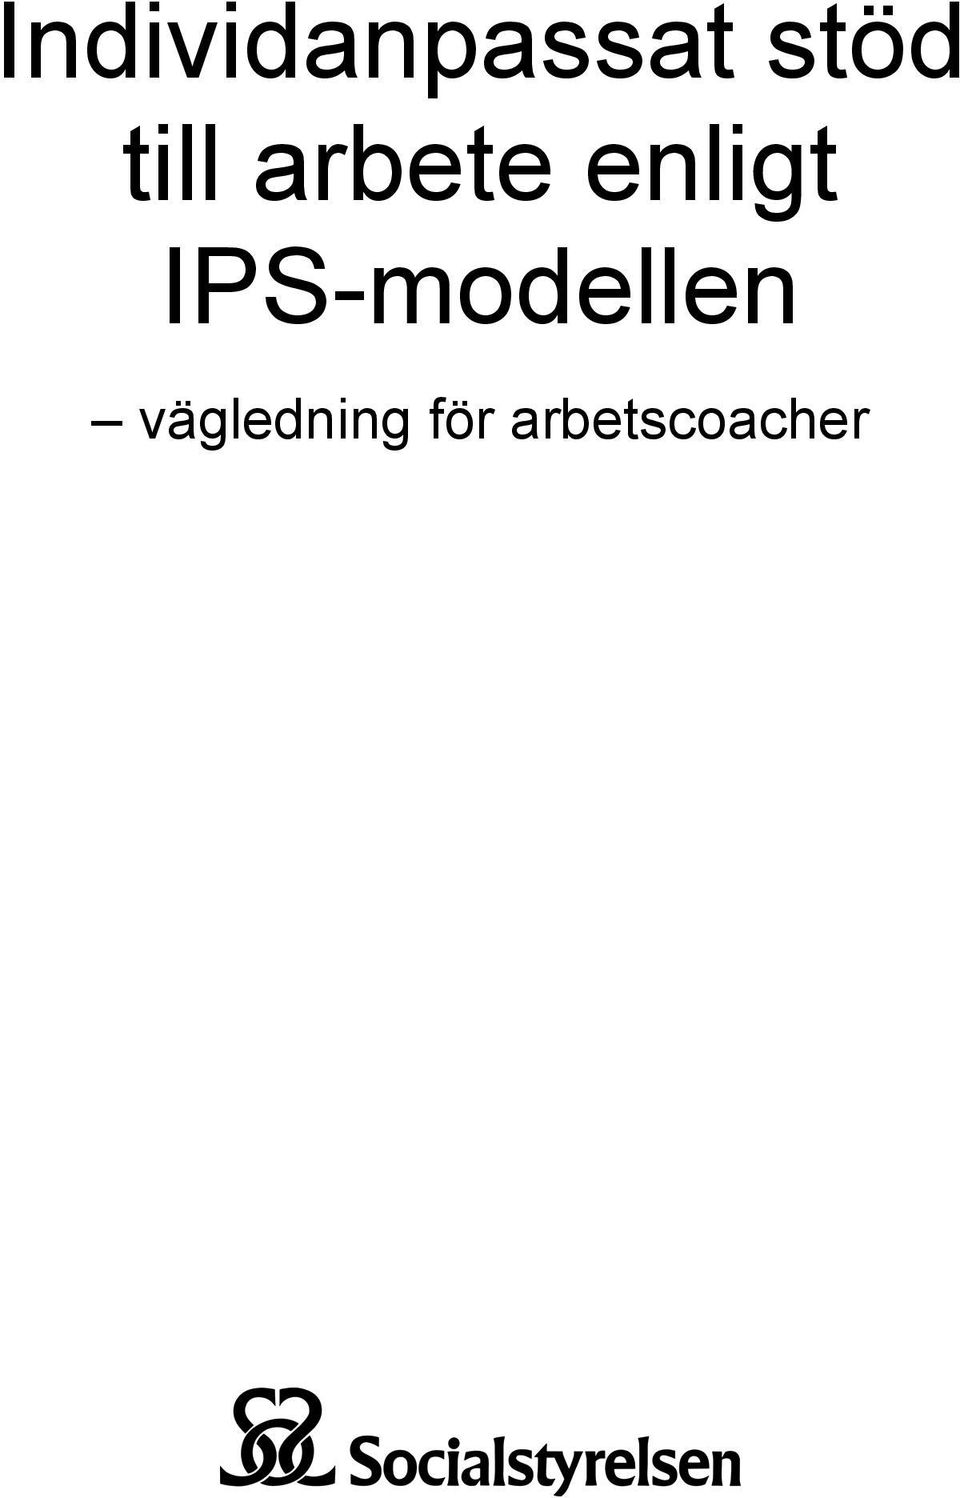 IPS-modellen